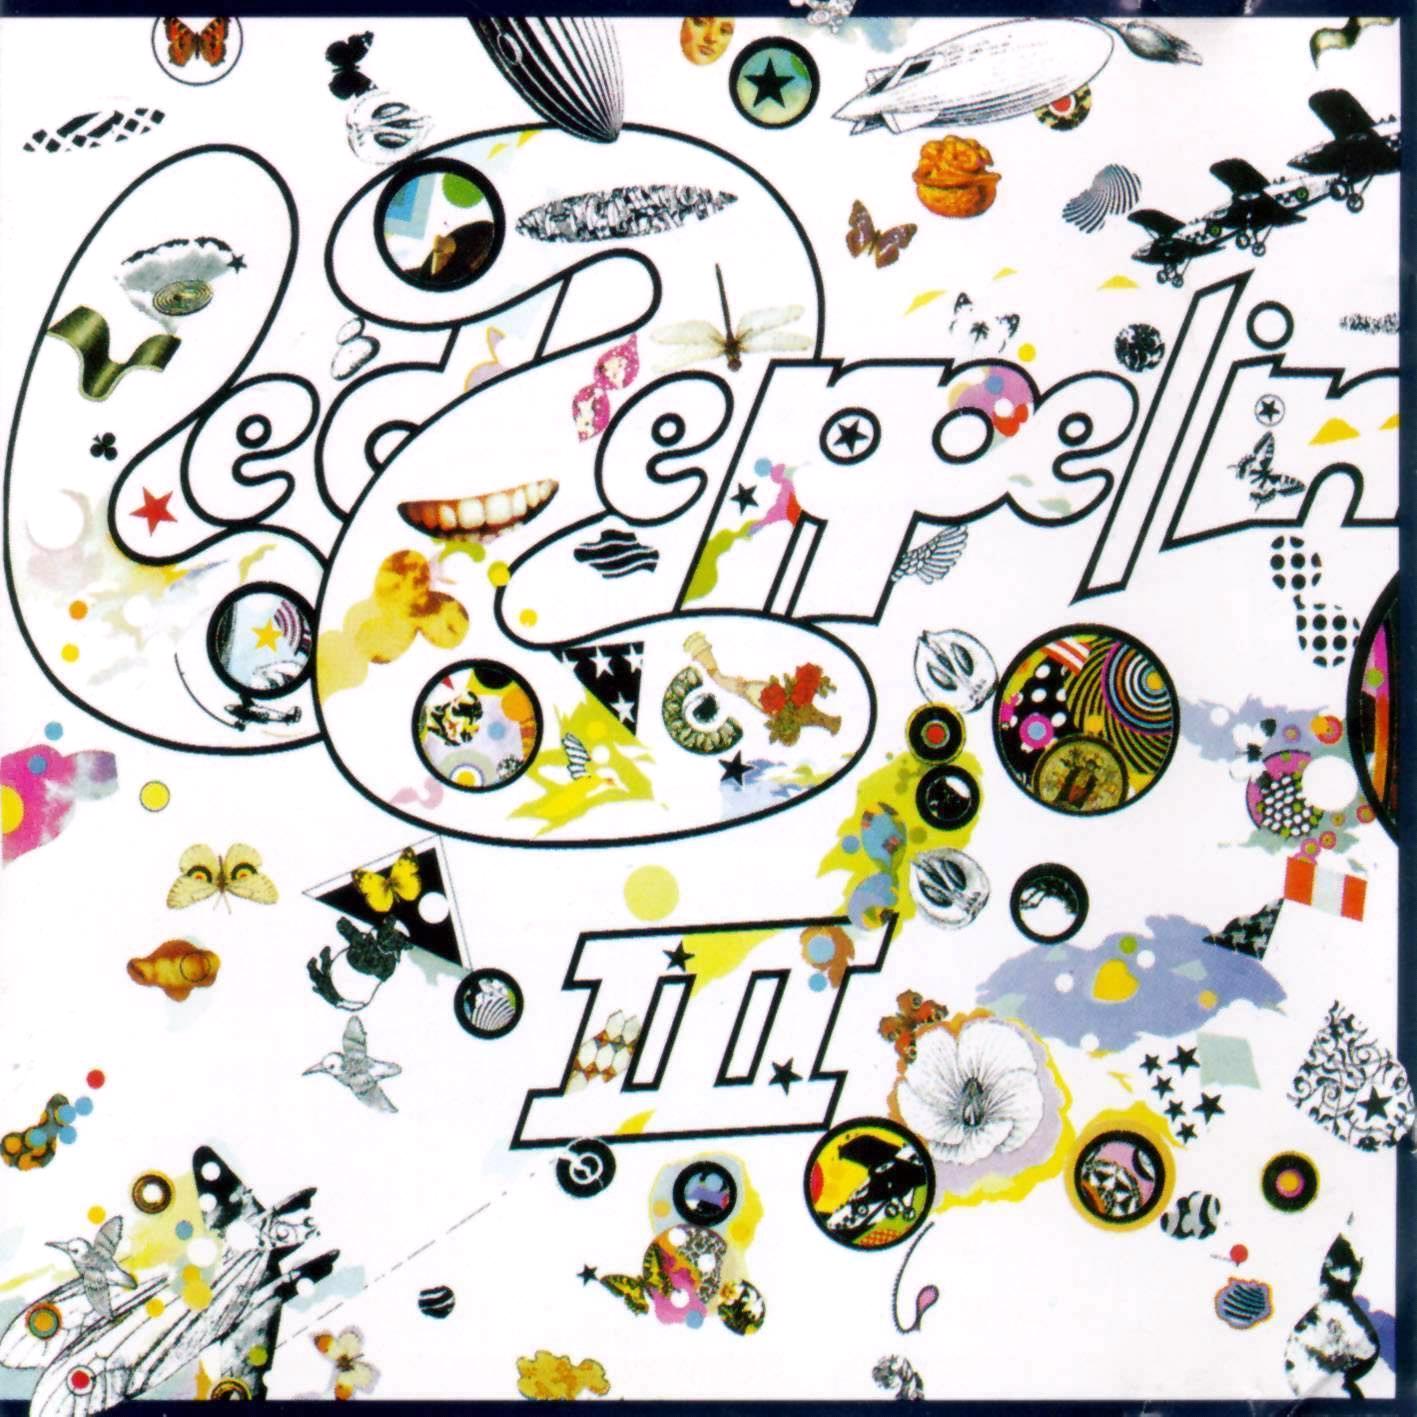 Led+Zeppelin+3.jpg